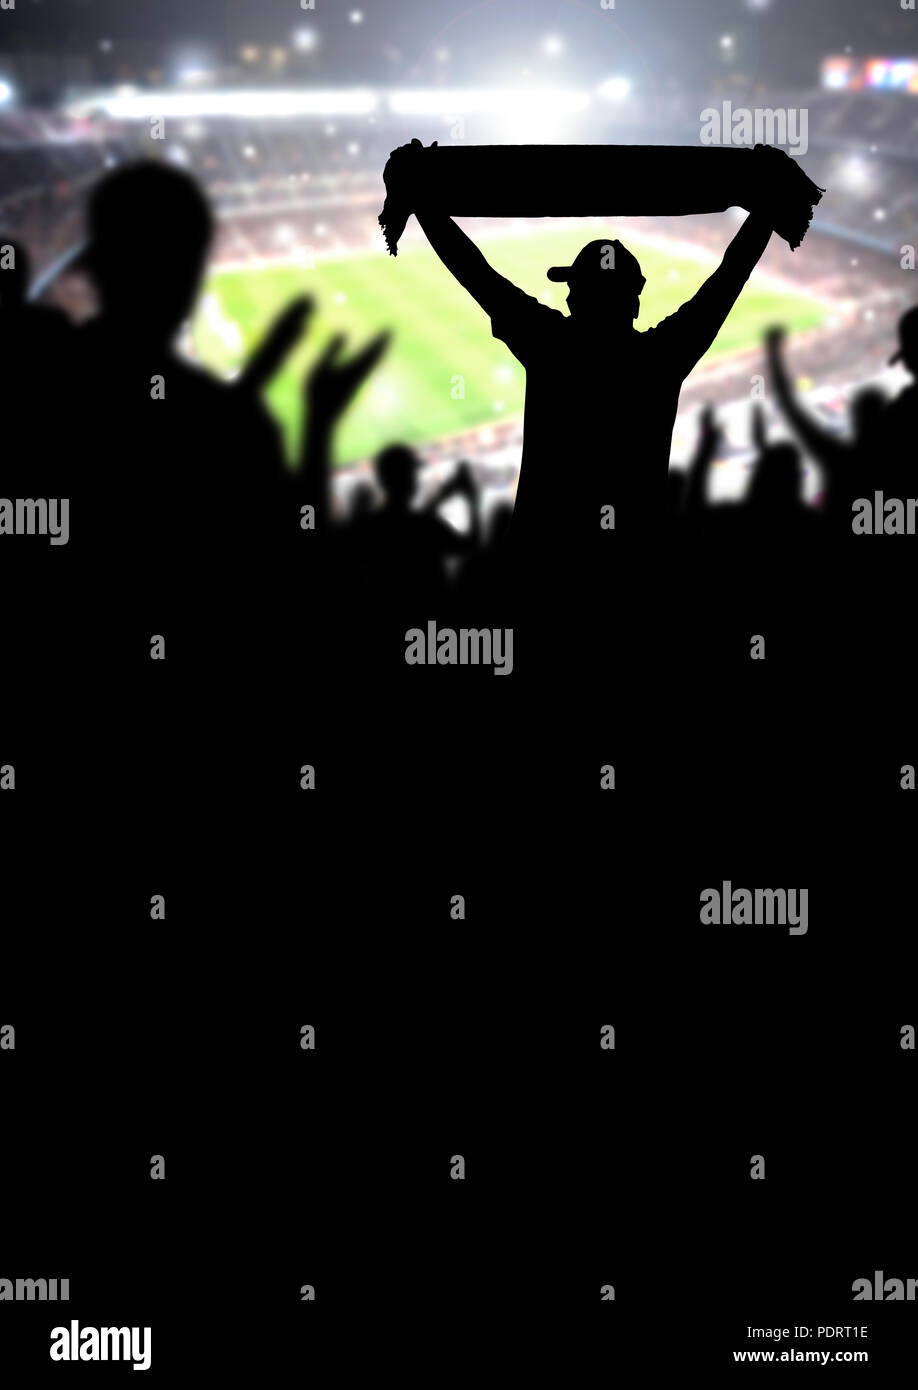 Fußball-Fans oder Fußball Menge Hintergrund. Silhouette Menschen im Stadion ansehen Spiel und übereinstimmen. Schwarz template Design für Event. Stockfoto